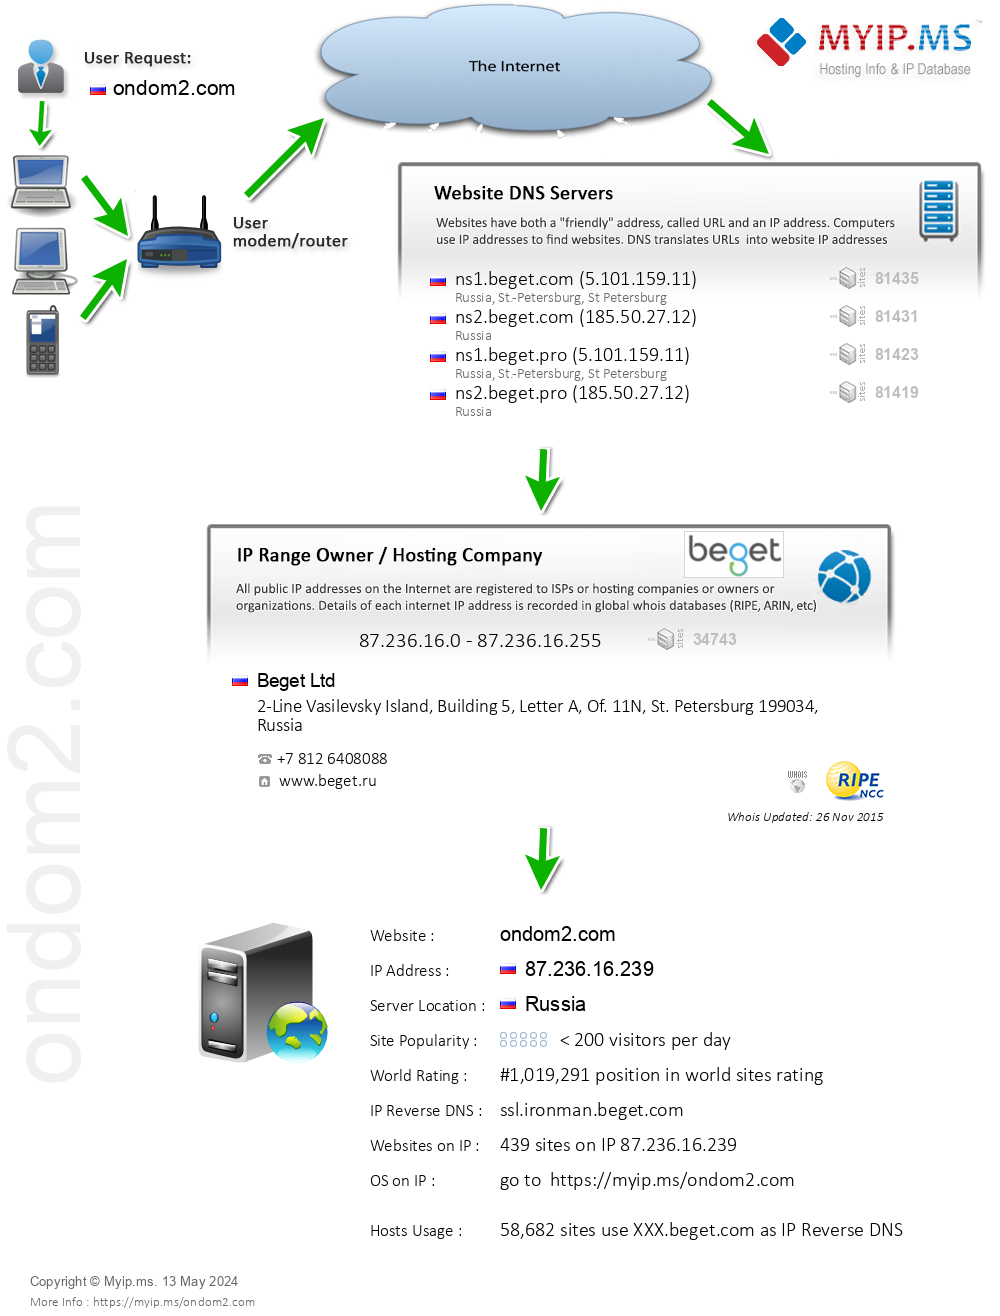 Ondom2.com - Website Hosting Visual IP Diagram